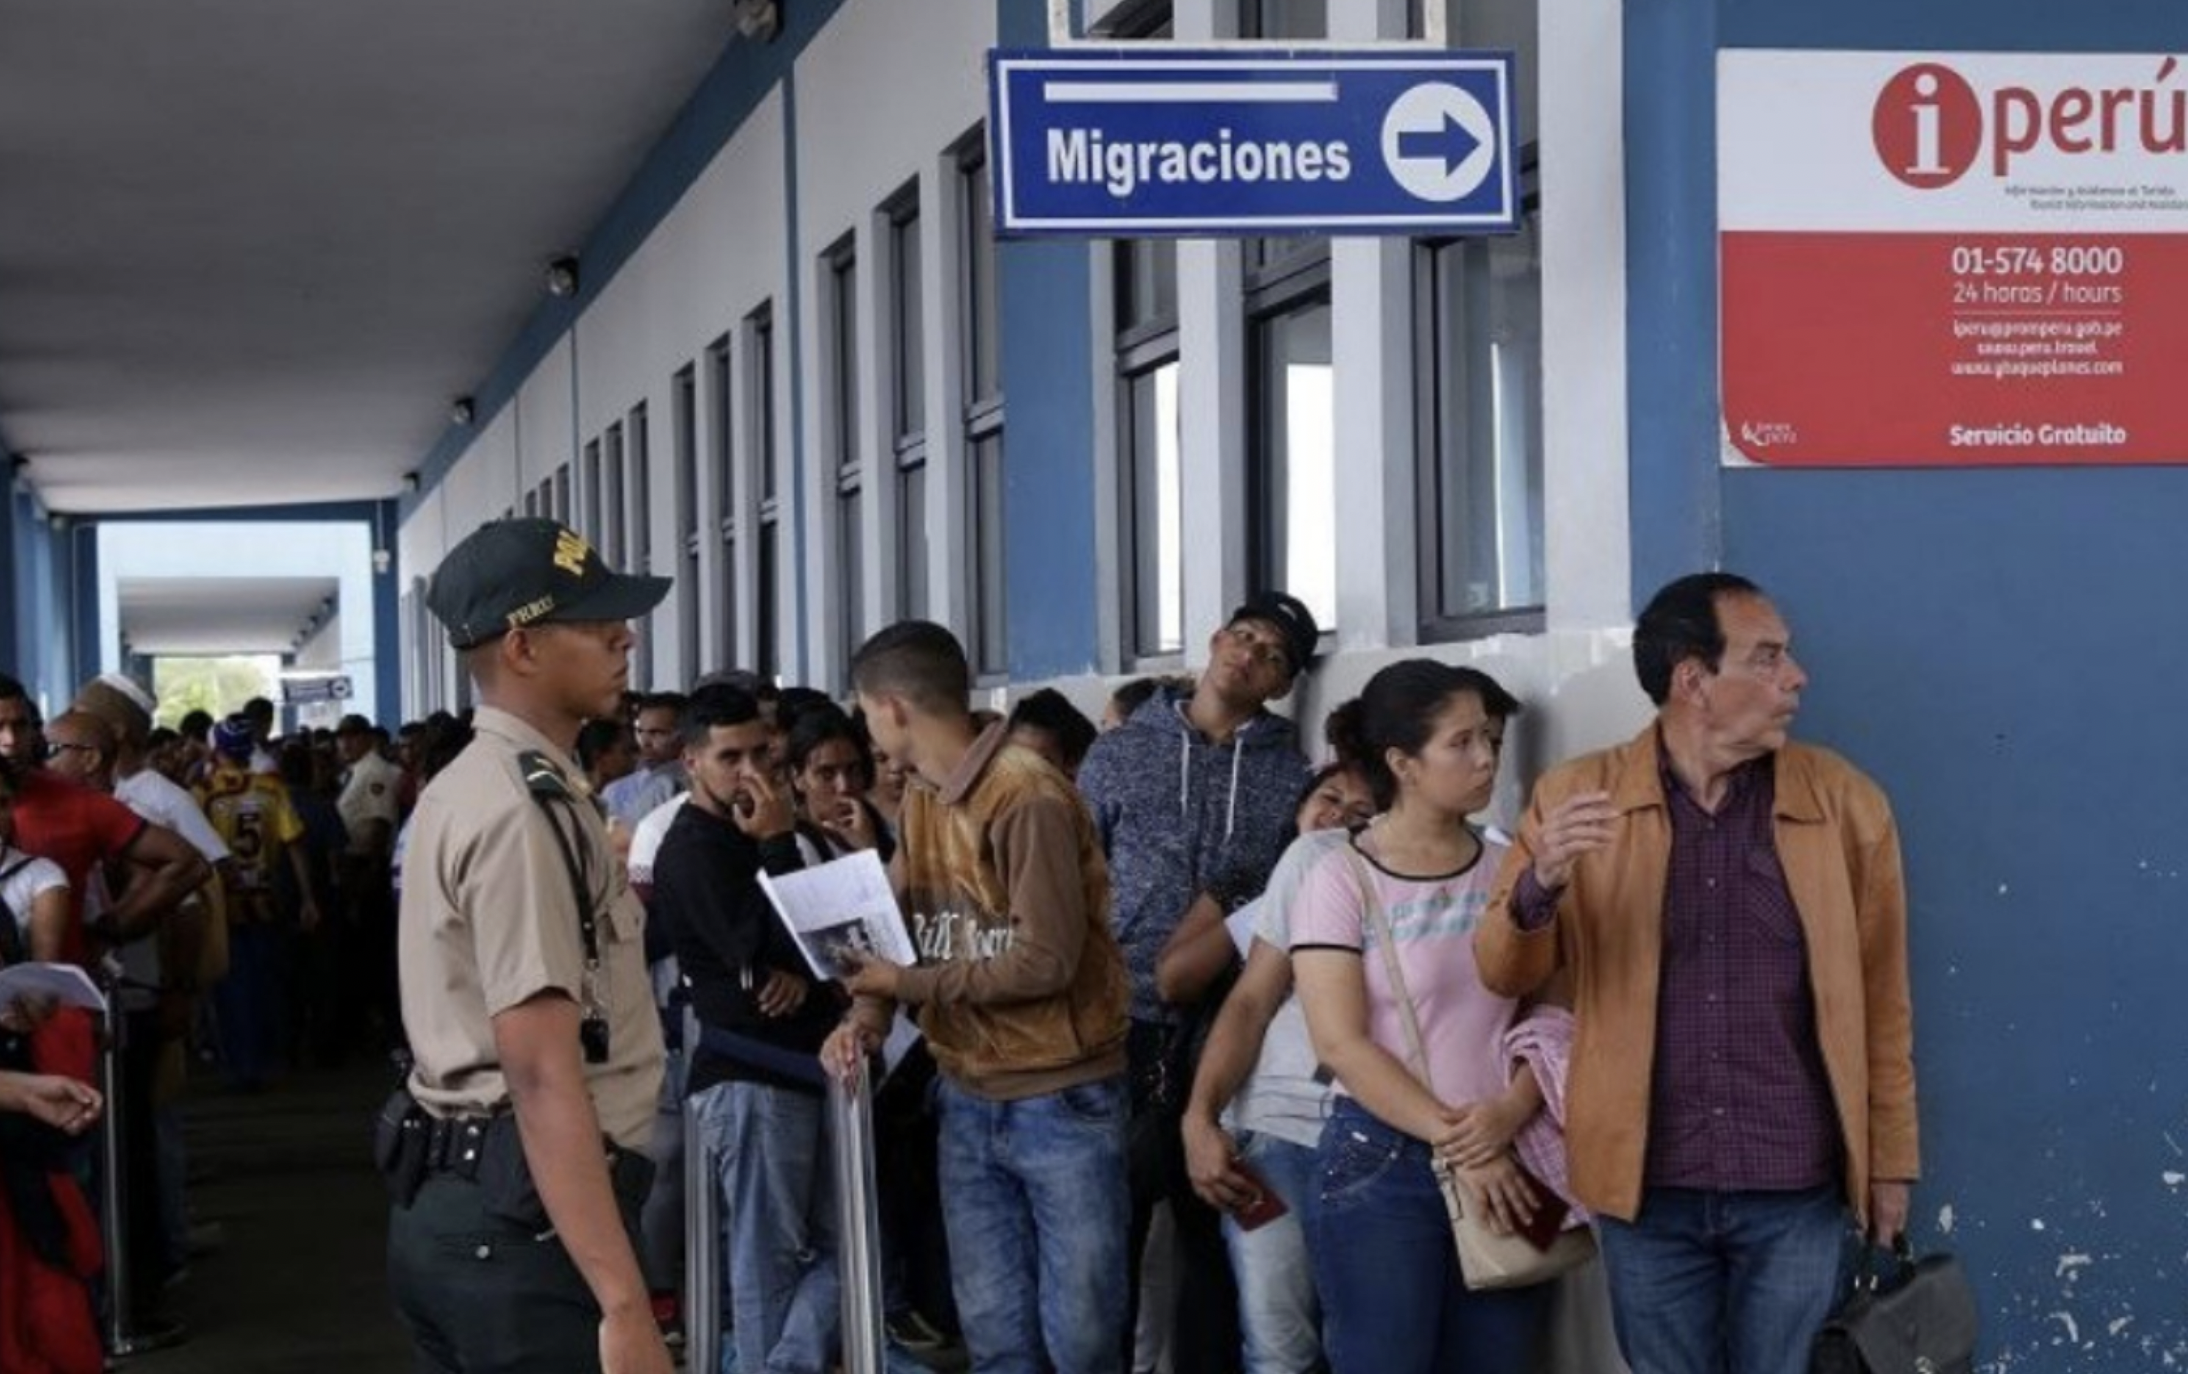 Perú no podrá expulsar a personas migrantes que peligran en su país de origen